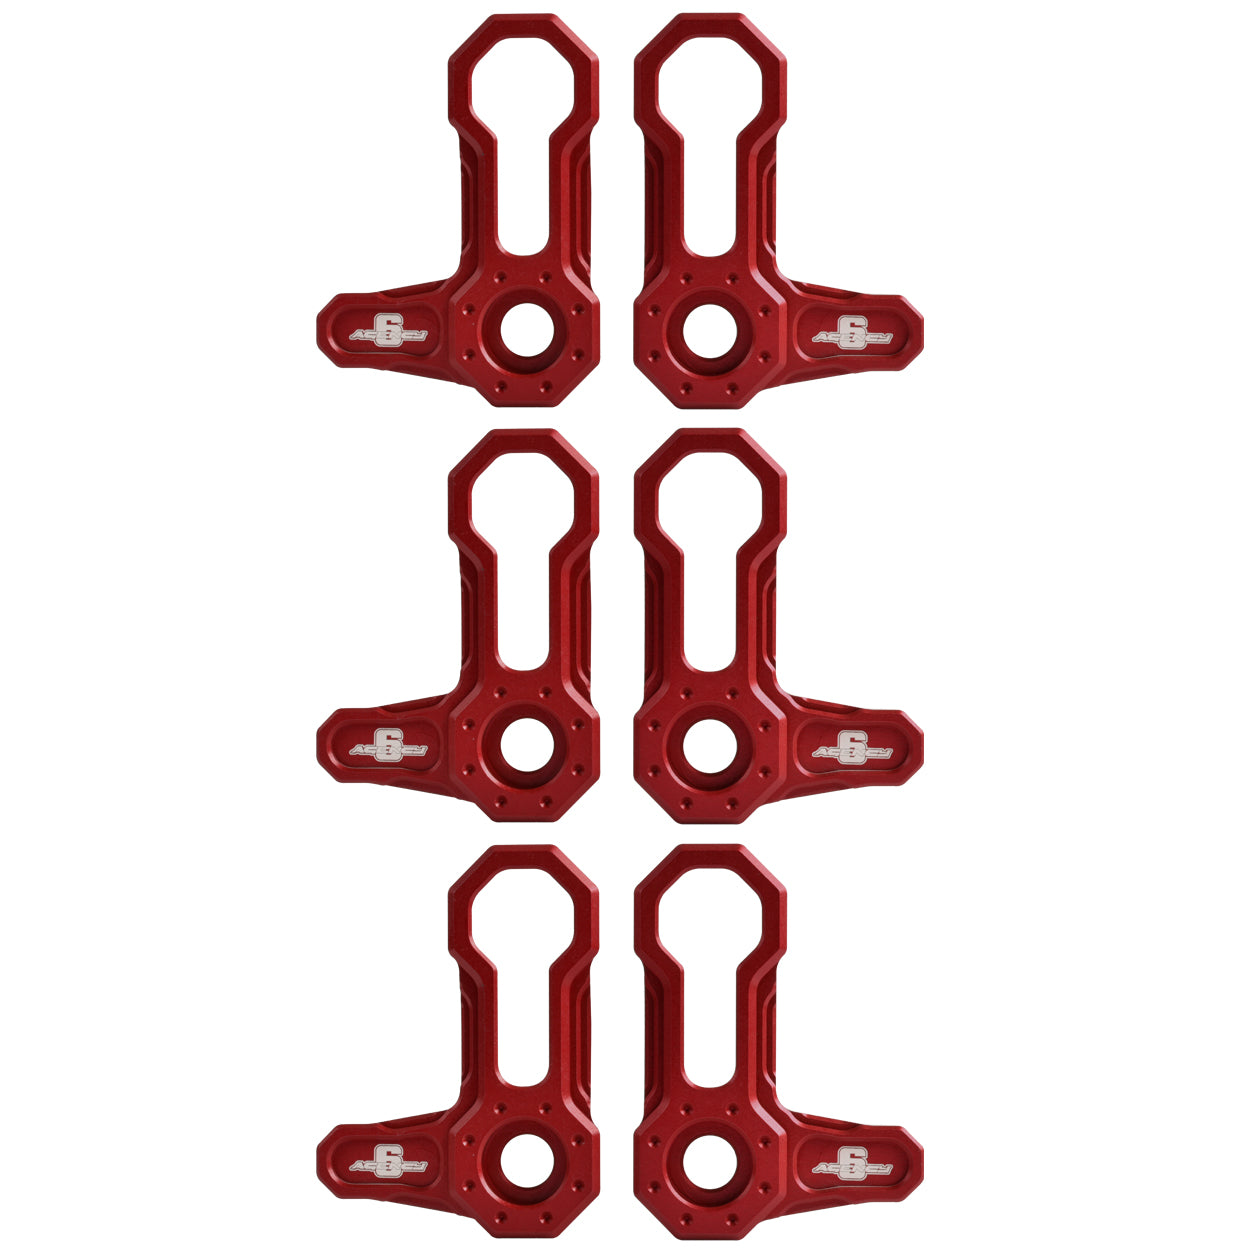 L-SHAPED ROOF LOCKS - JL/JT JEEP (Set of 6) RED